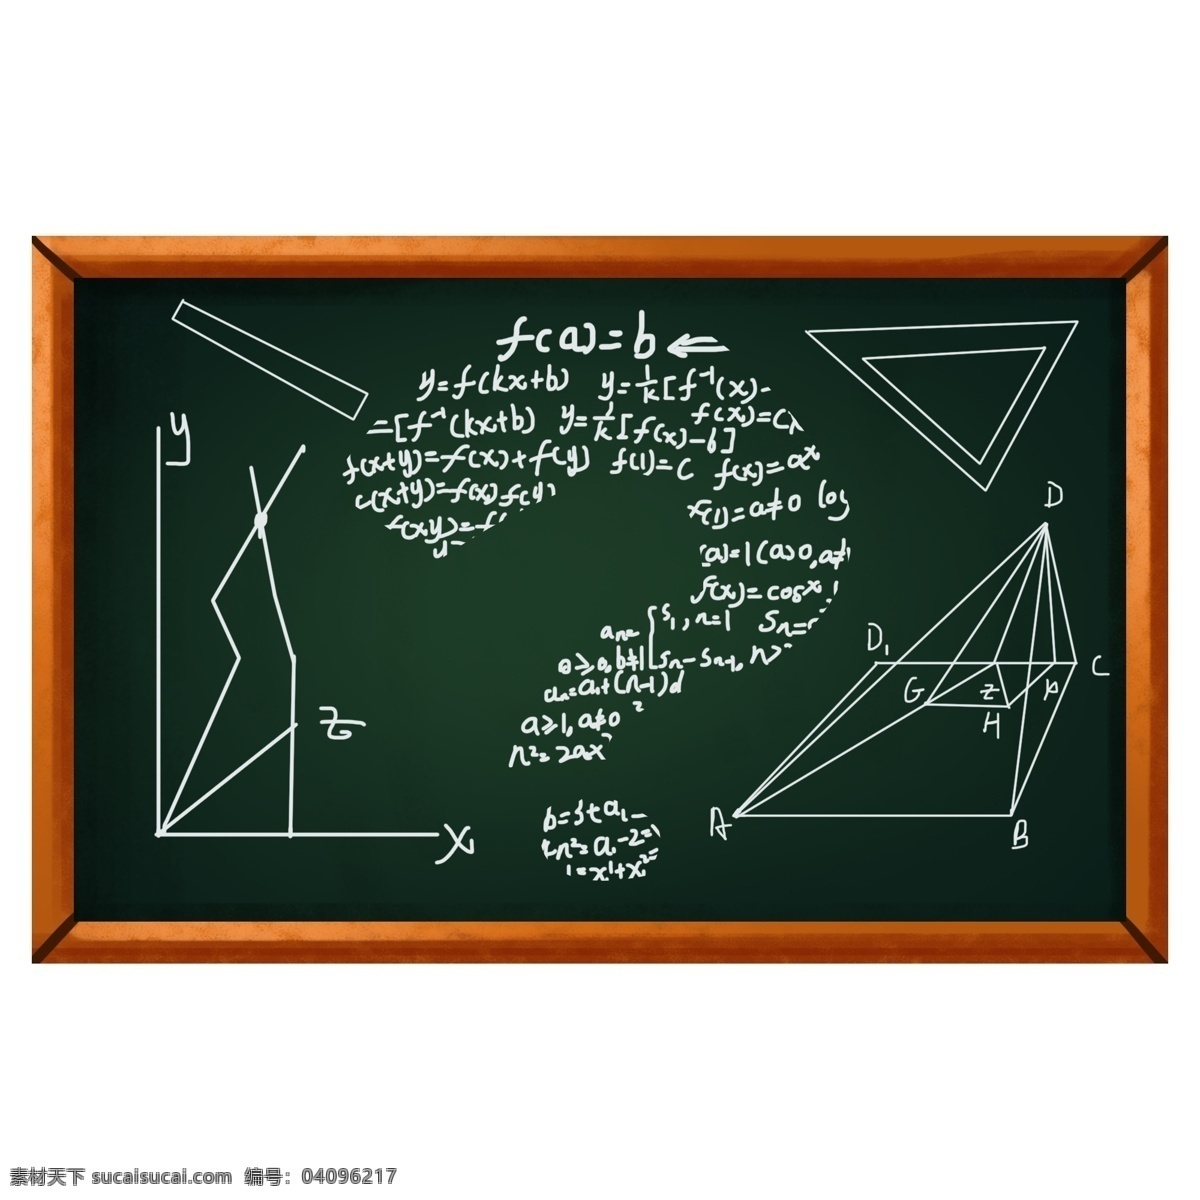 黑板 粉笔字 数学 问号 装饰 图案 背景 底纹 绿色 红色 白色 木头 尺子